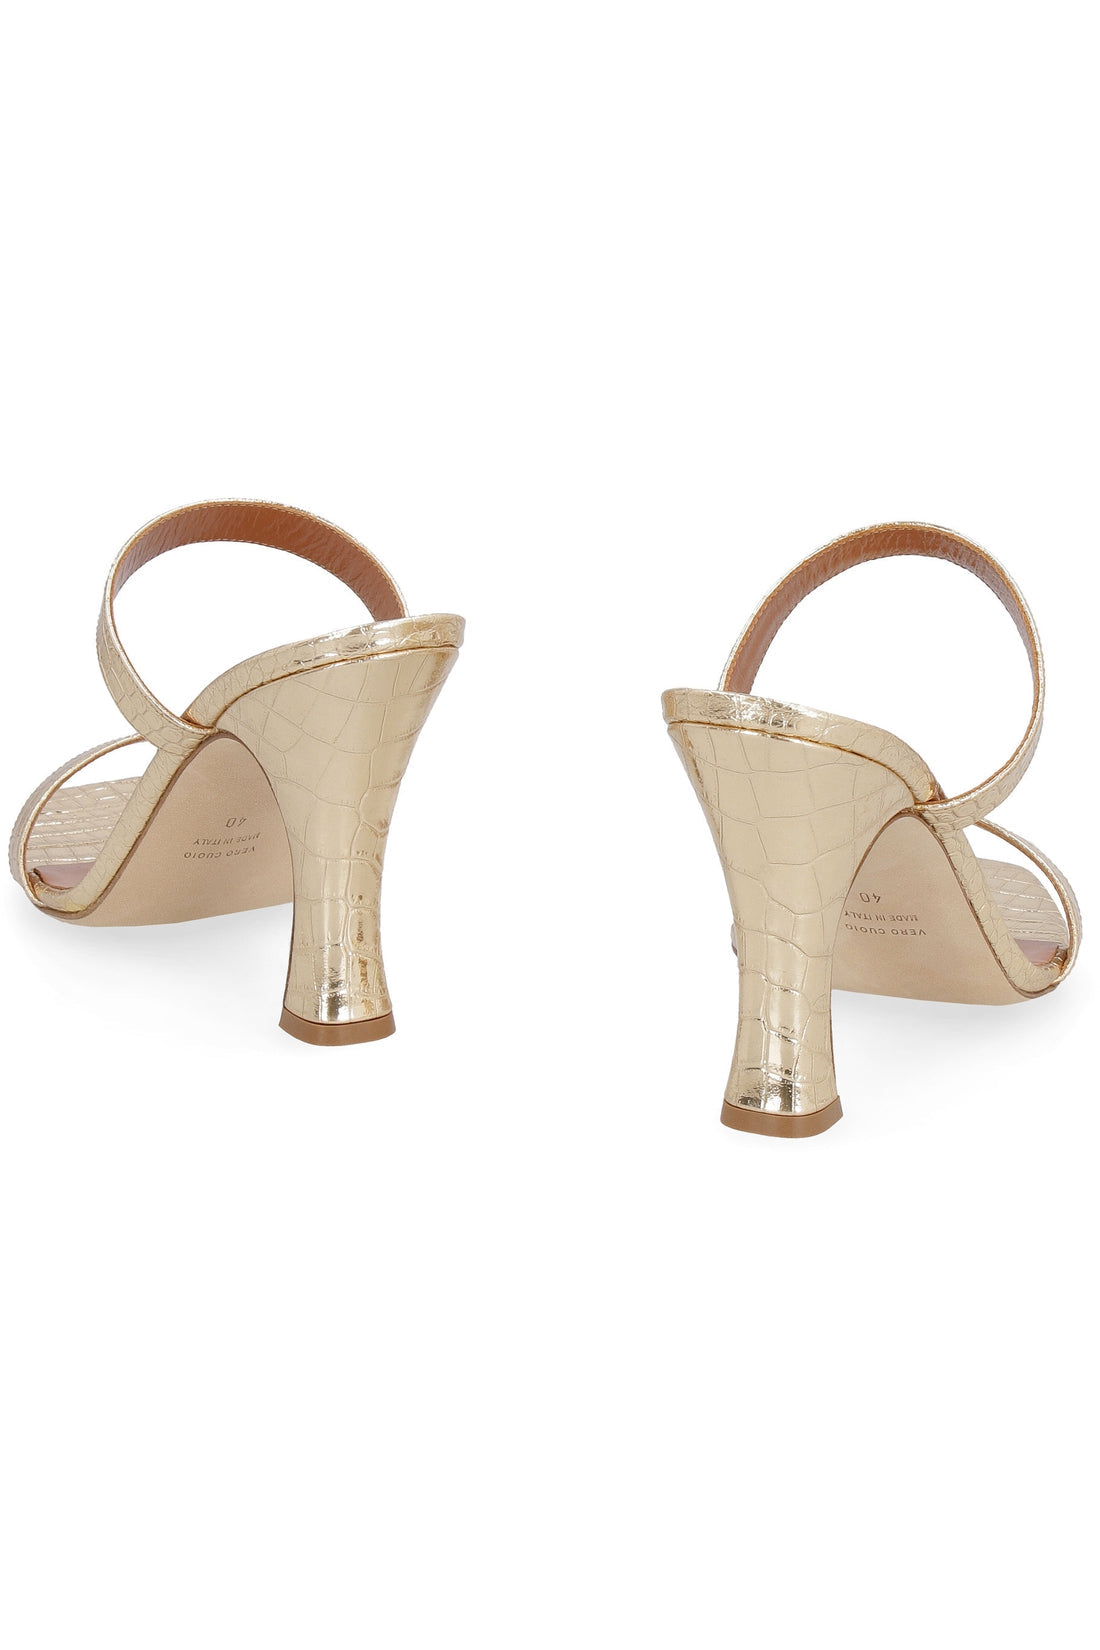 Paris Texas-OUTLET-SALE-Metallic leather sandals-ARCHIVIST